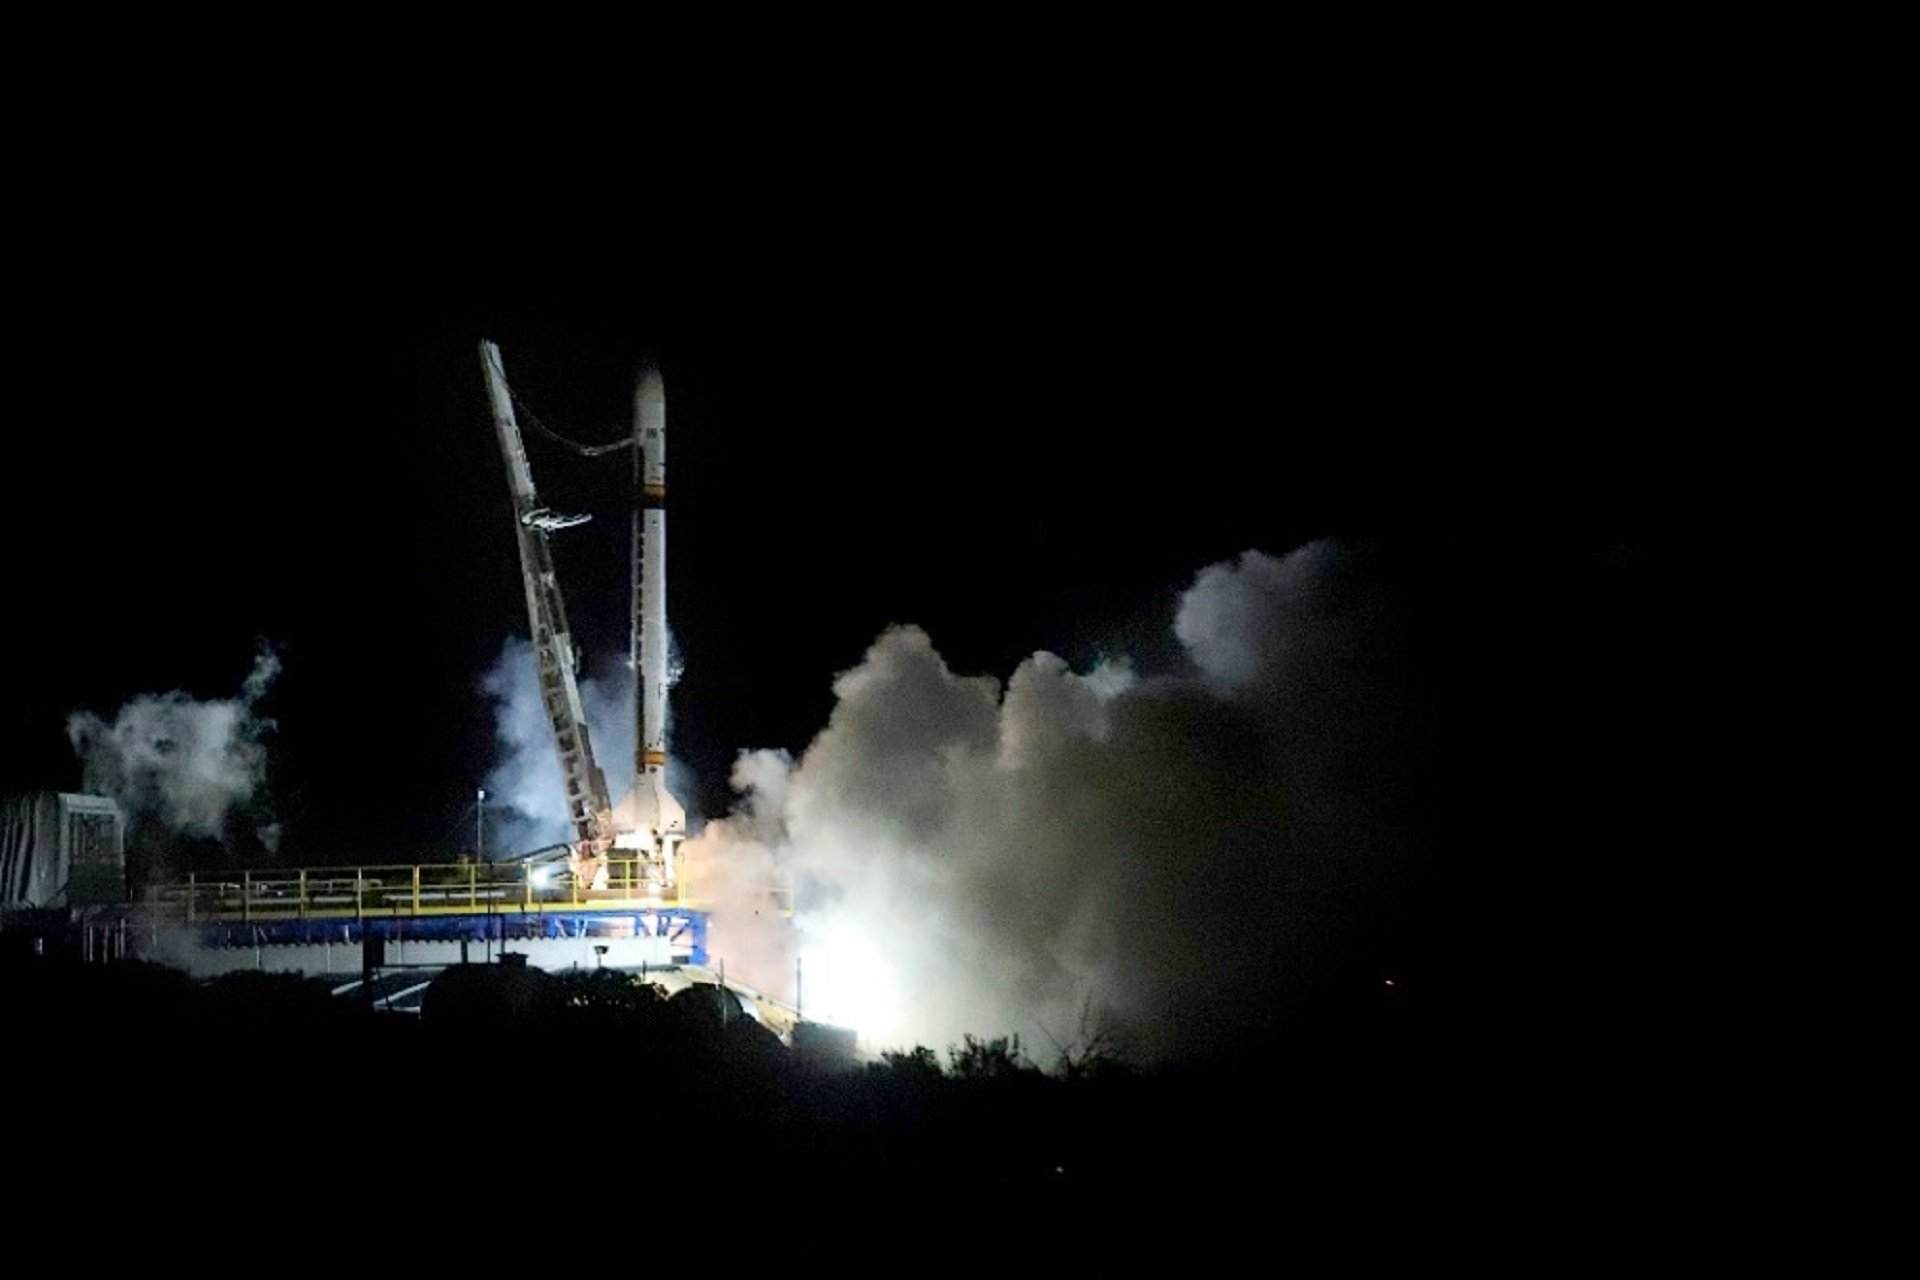 El coet espanyol 'Miura 1' arriba a l'espai amb èxit després de 2 intents fallits